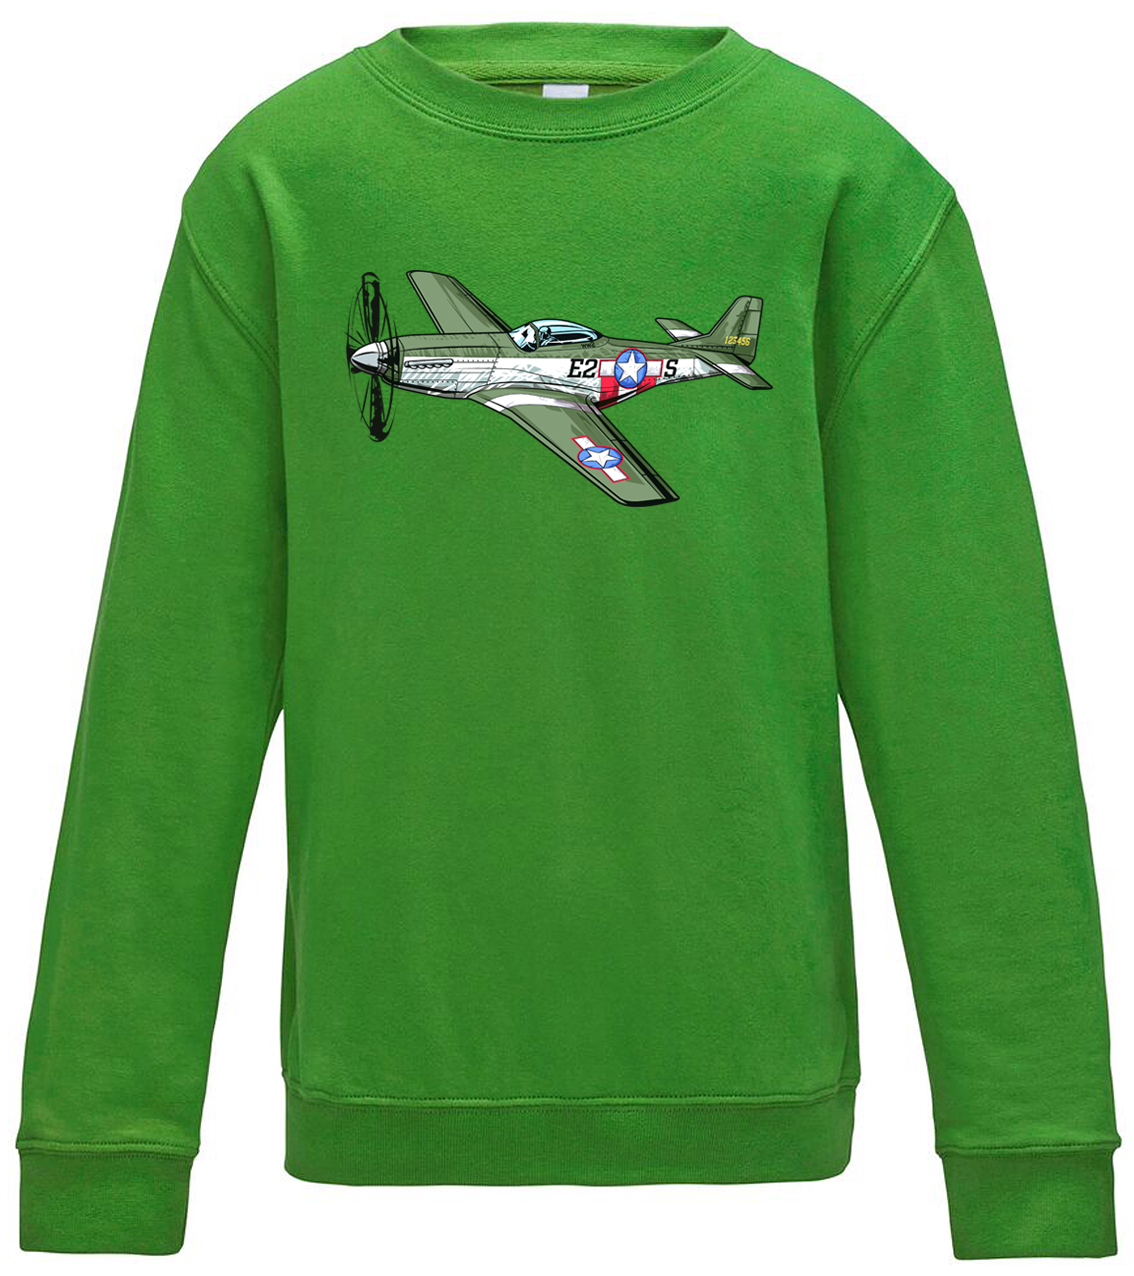 Dětská mikina s letadlem - P-51 Mustang Velikost: 5/6 (110/116), Barva: Zelená